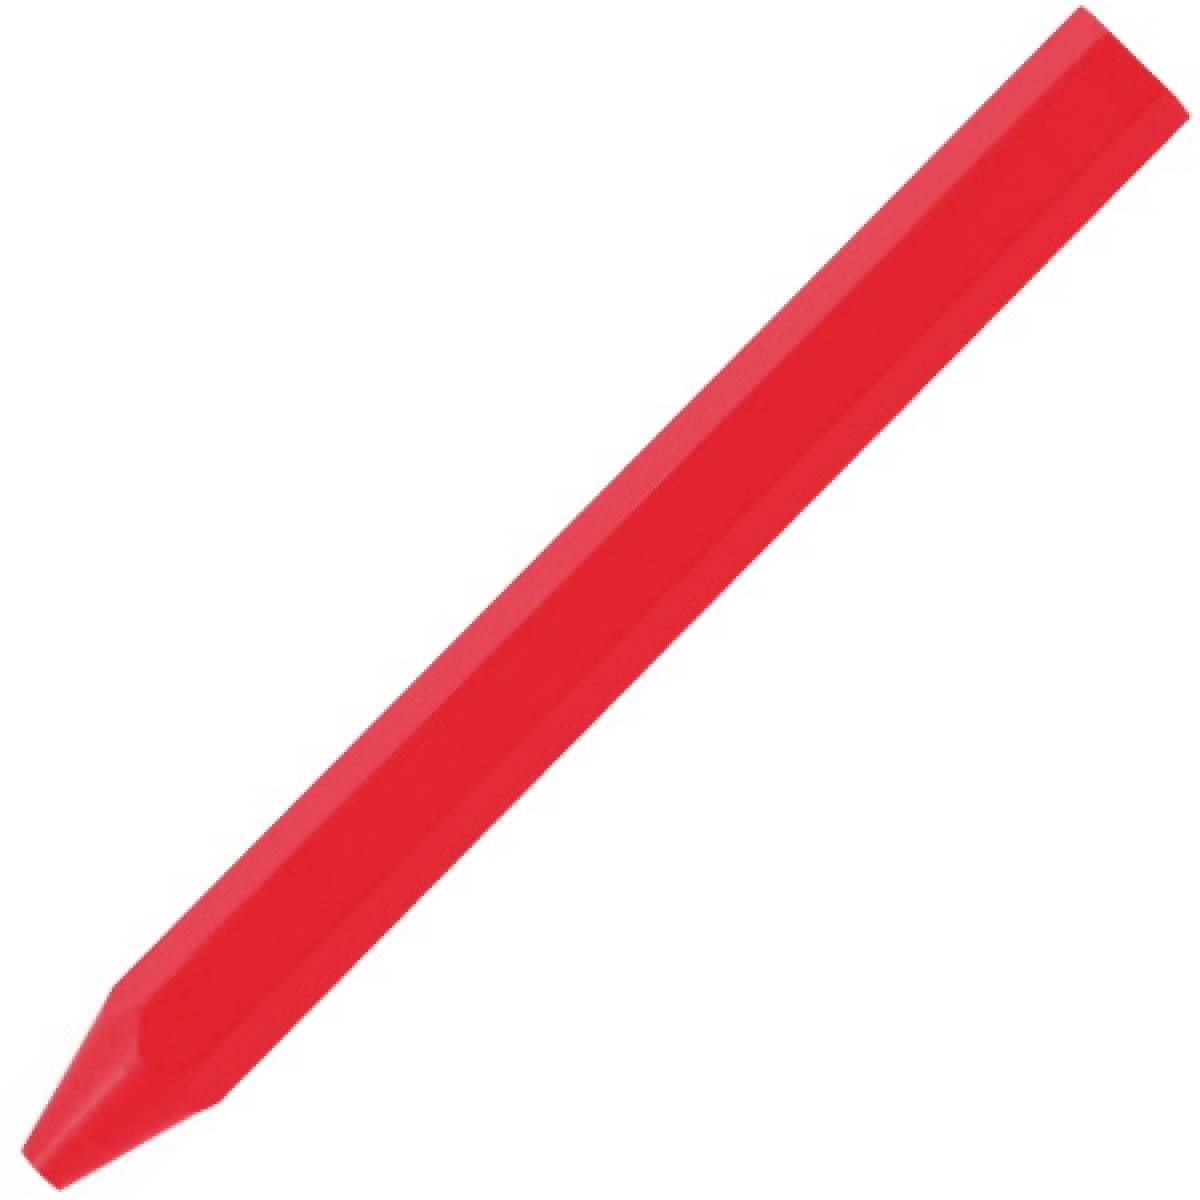 Мелок Lyra люминесцентный, длина 120 мм, красный L4870313 мелок lyra люминесцентный длина 120 мм красный l4870313